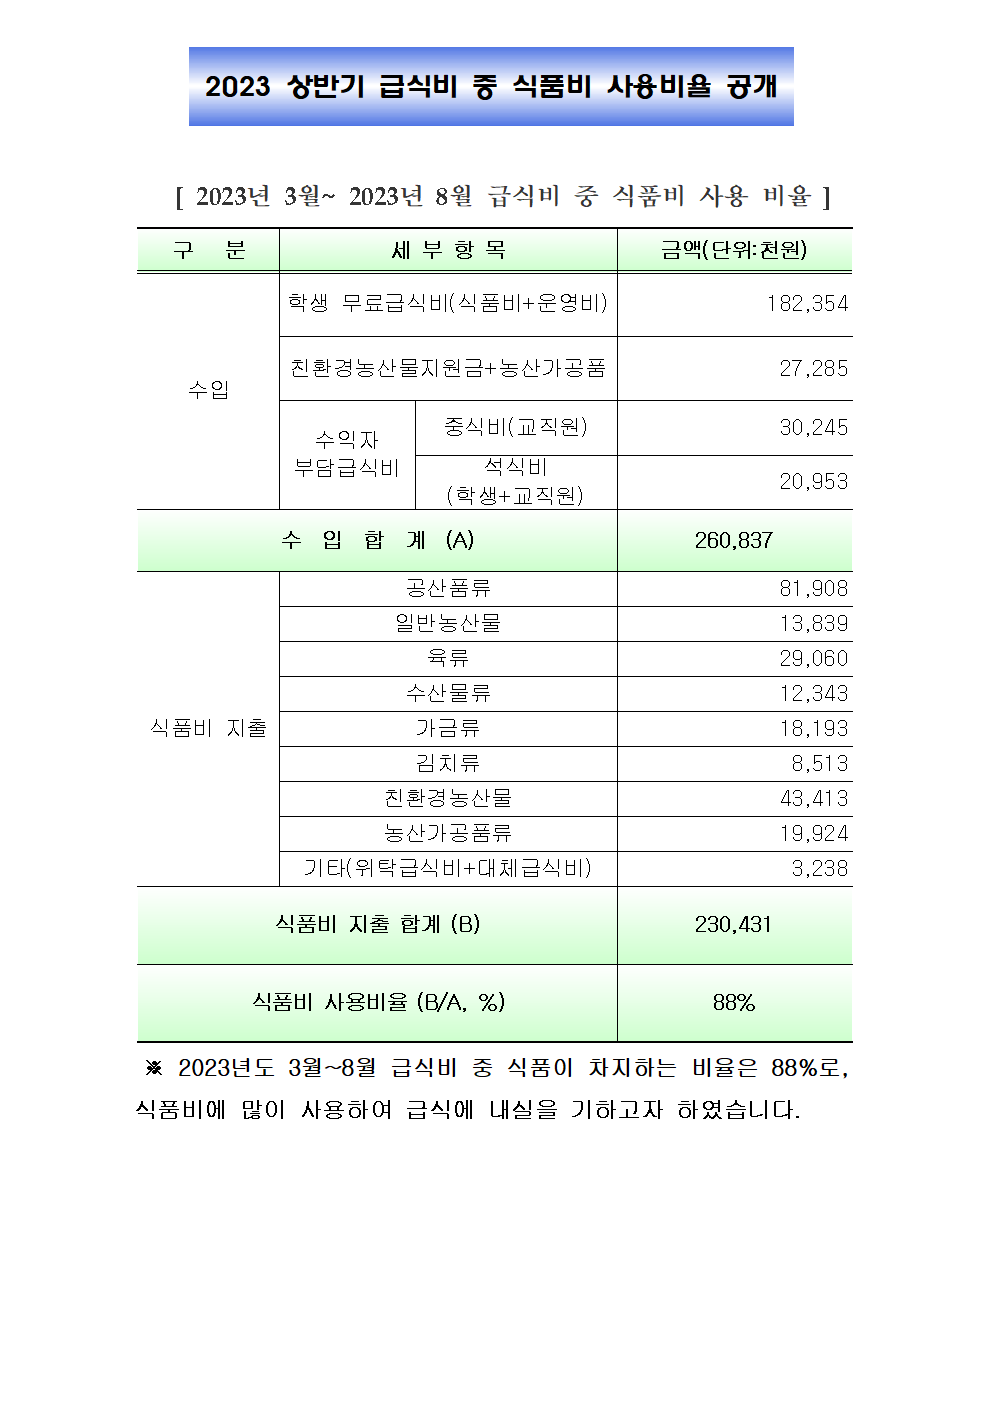 0831(2023년 상반기 급식비중 식품비사용비율공개 )